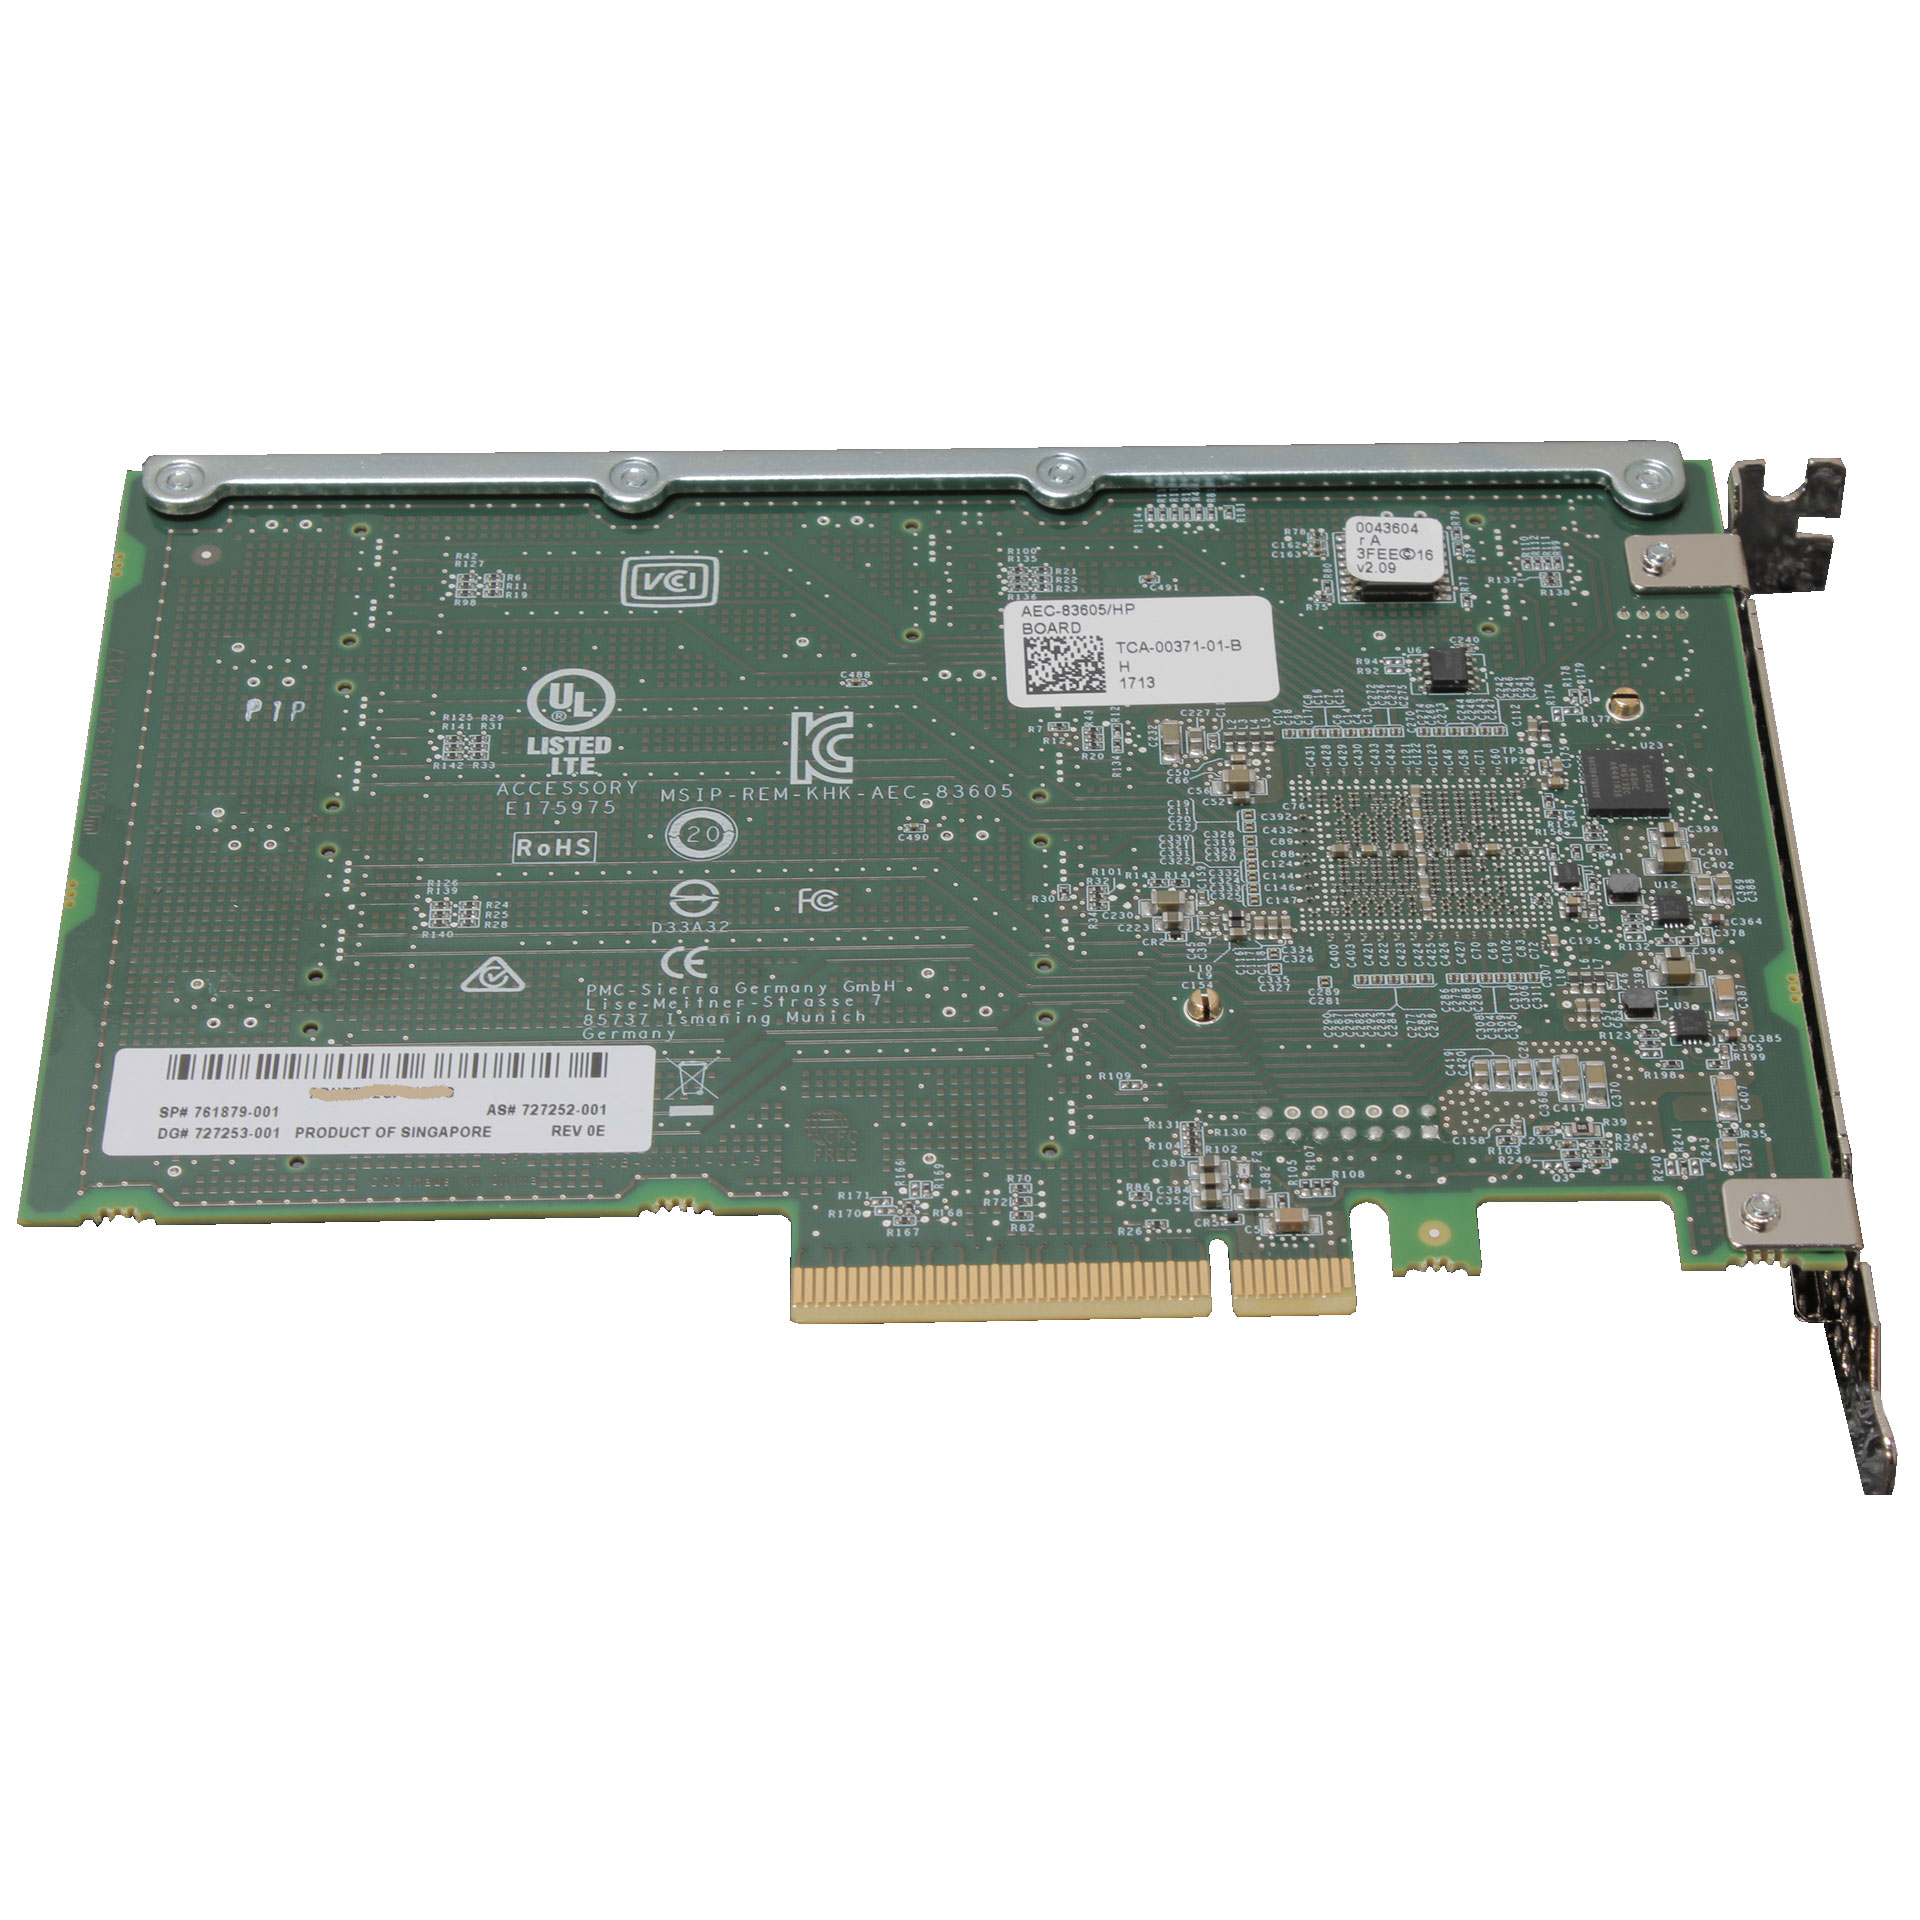 HP 761879-001 SMART ARRAY 12GB PCI-E 3 X8 SAS EXPANDER CARD